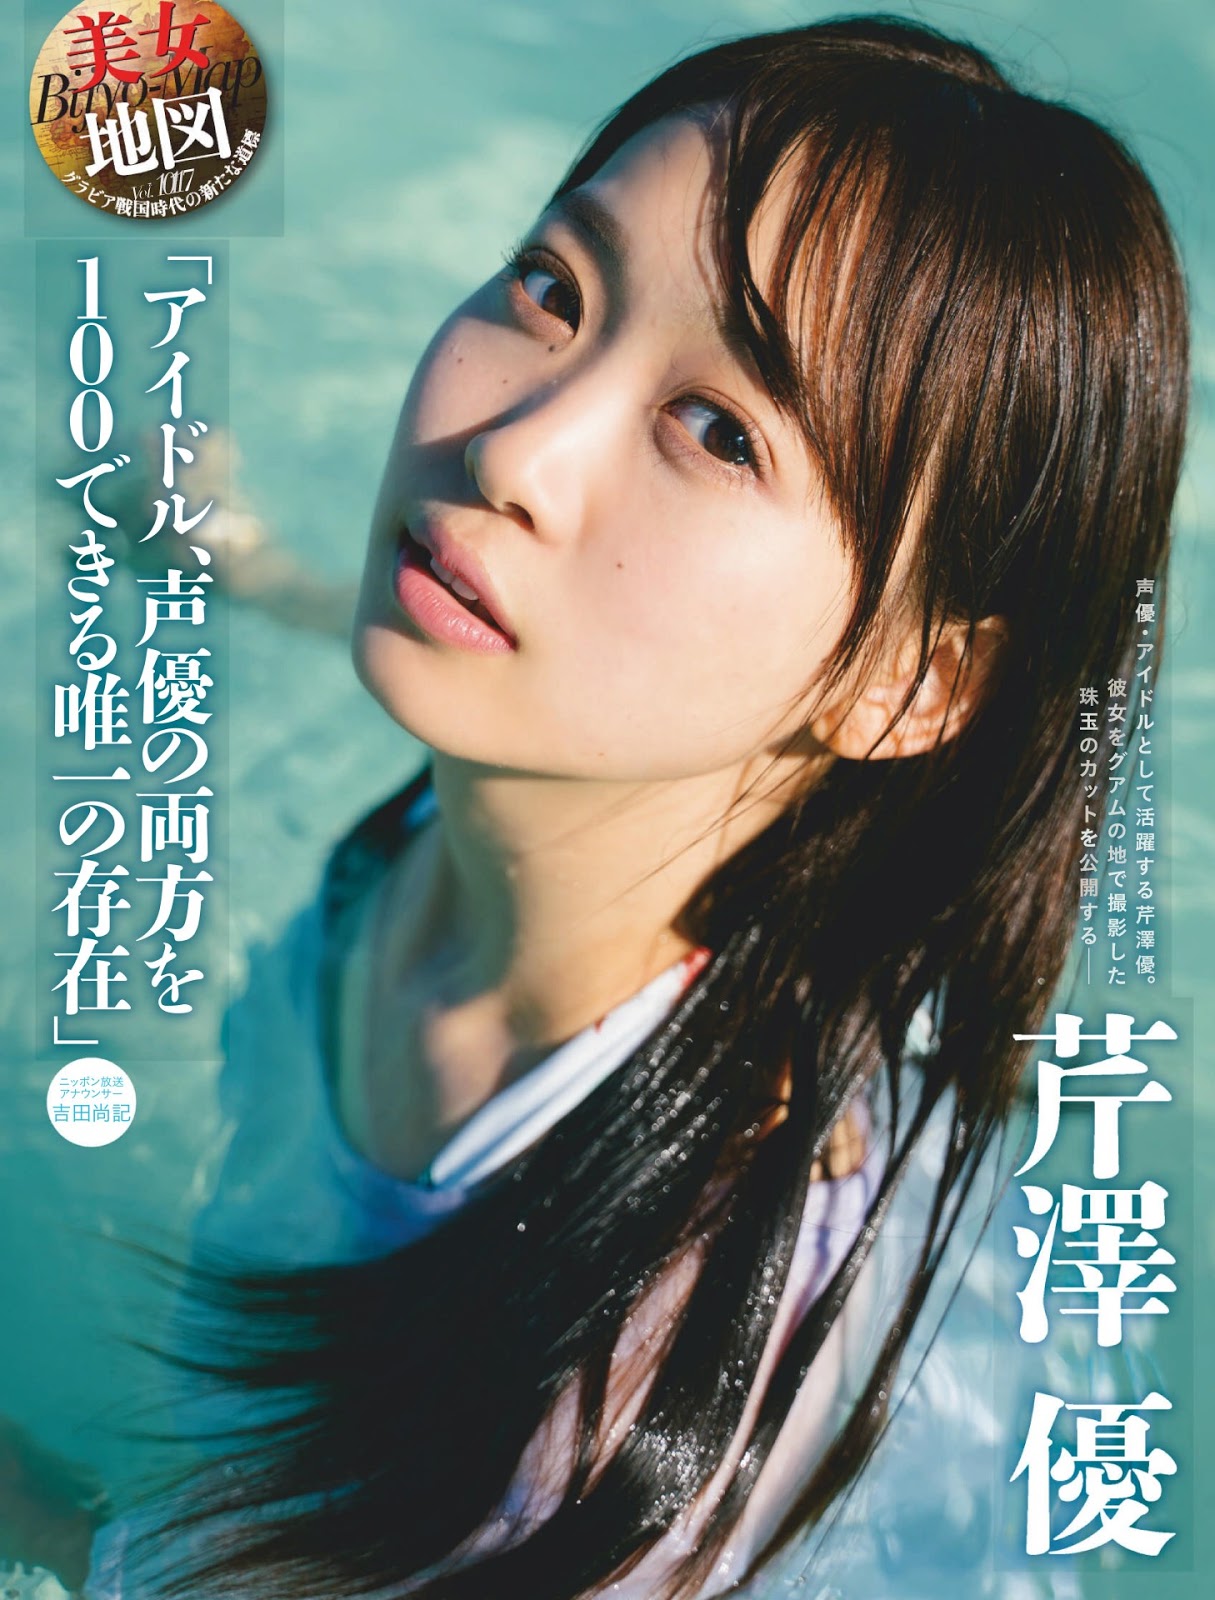 Yū Serizawa 芹澤優, Weekly SPA! 2019.04.30 (週刊SPA! 2019年4月30日号)